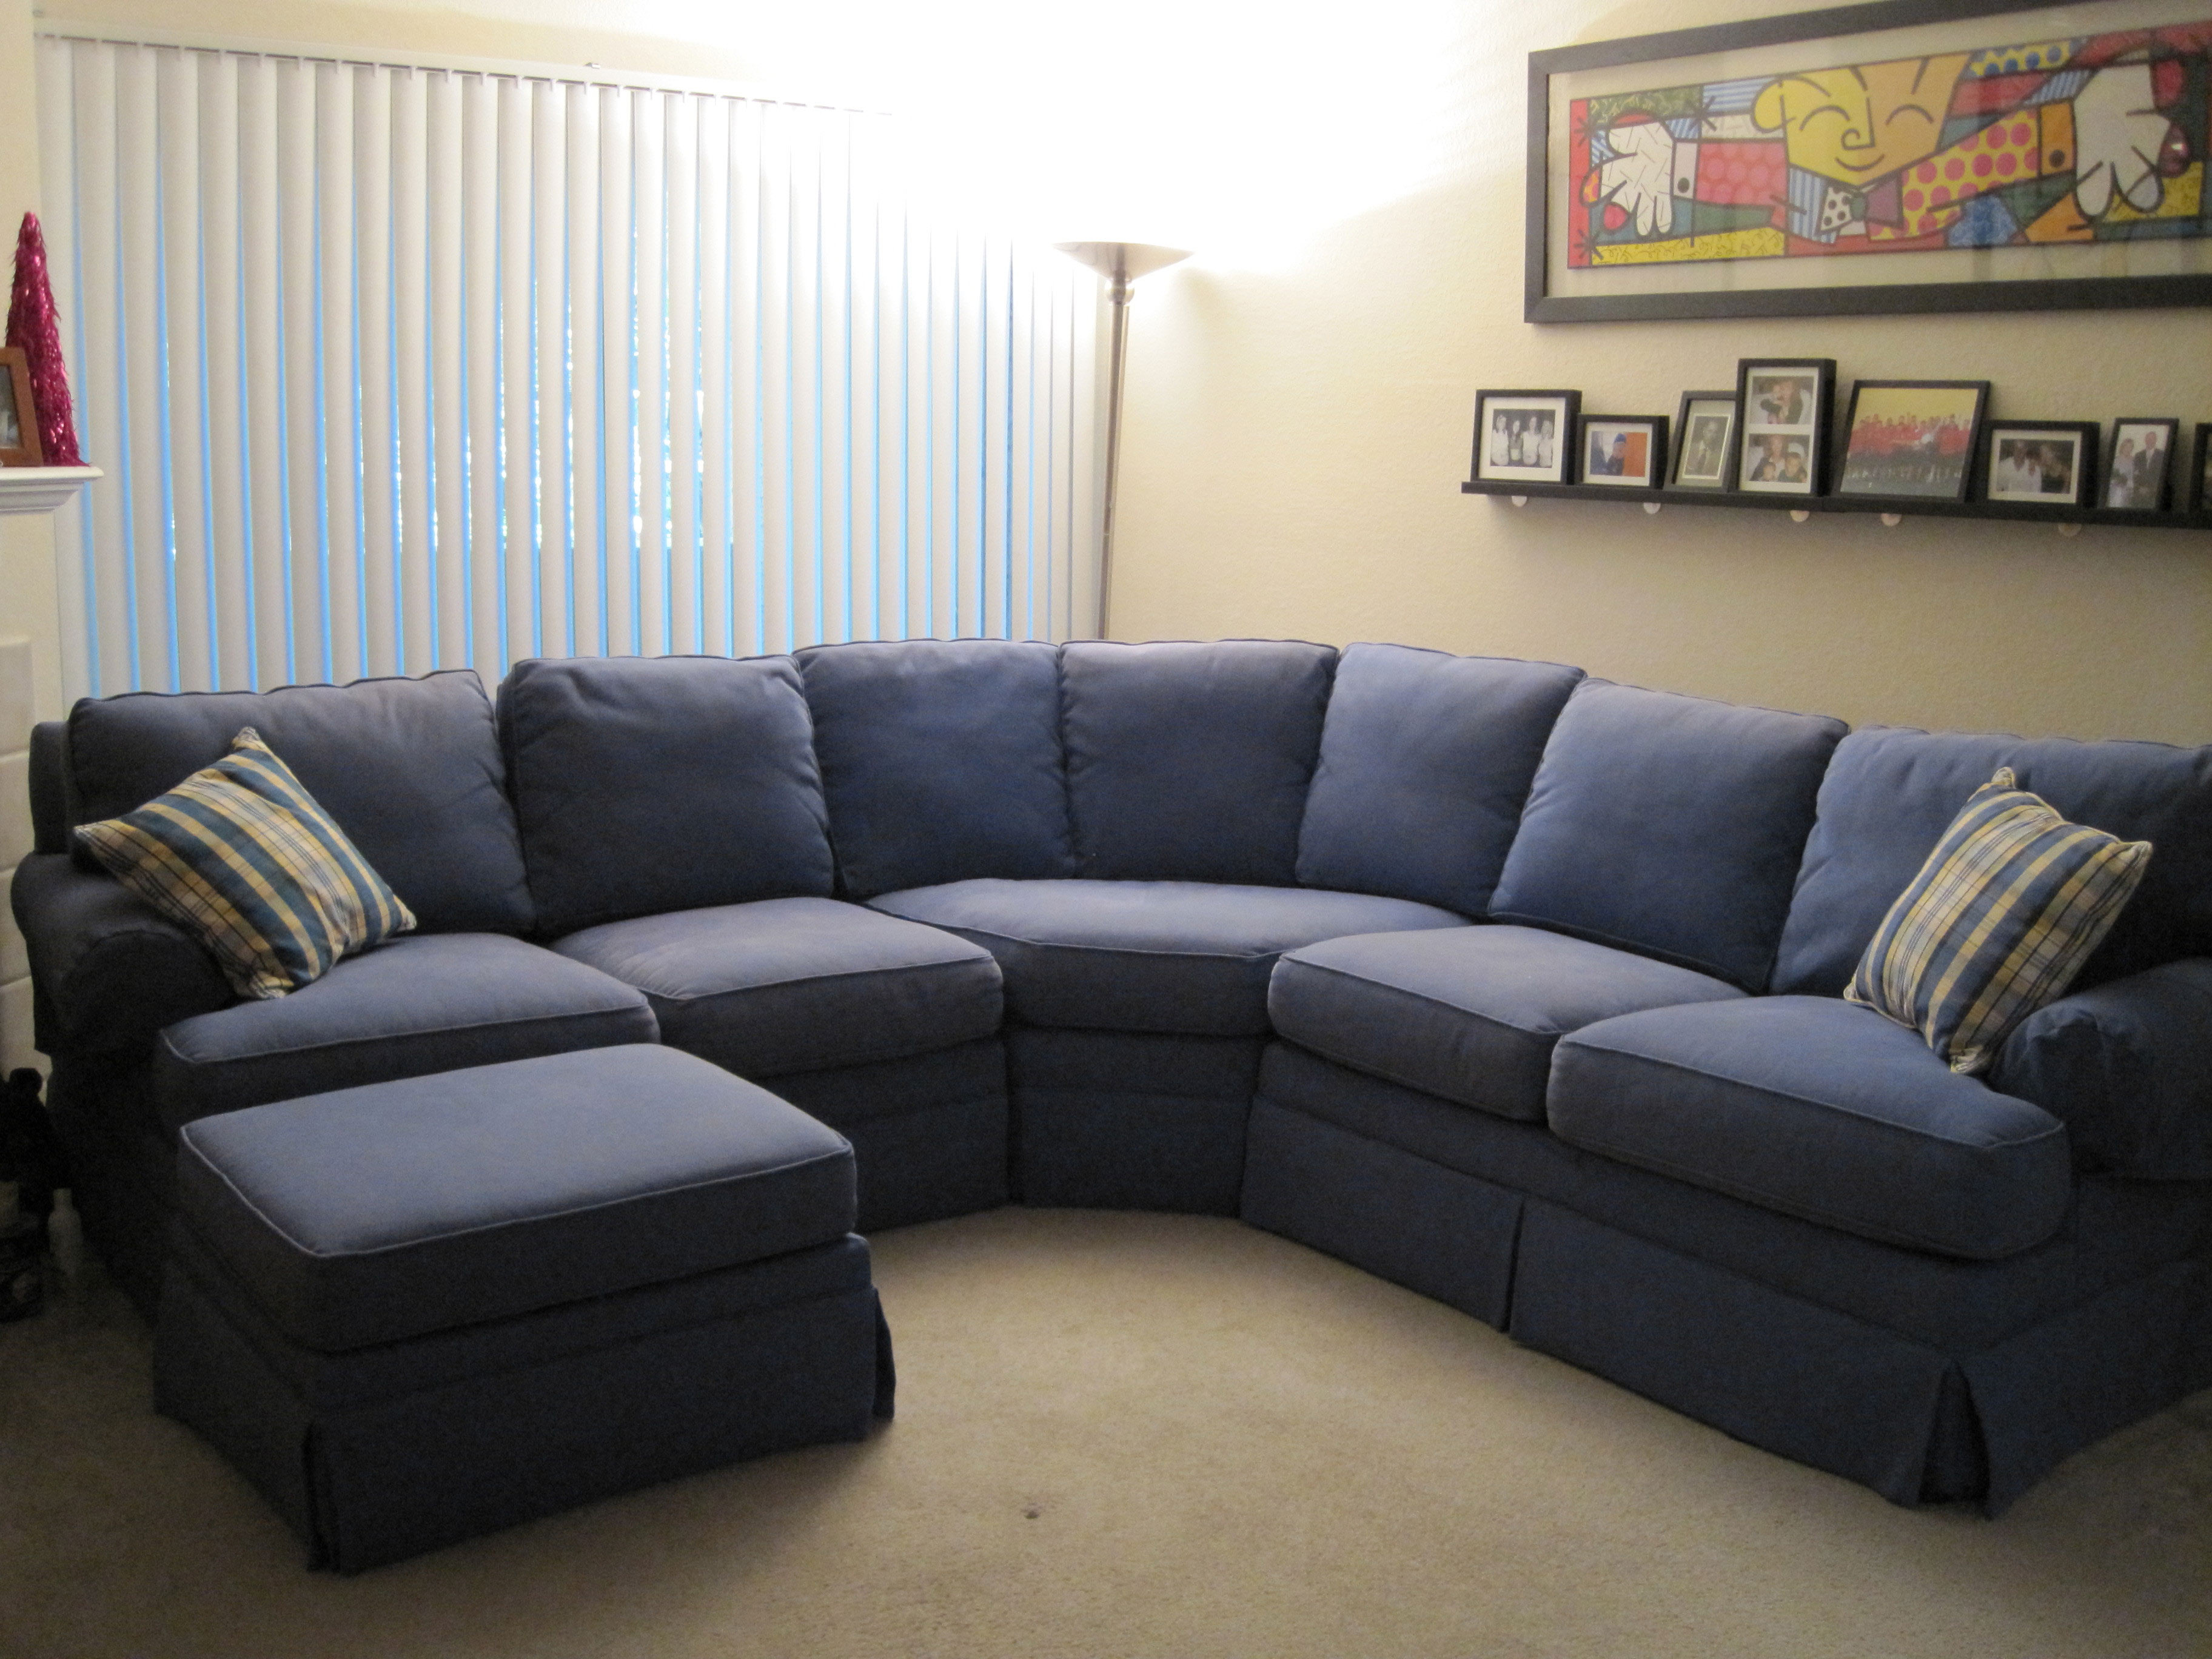 Small Living Room With Big Sofa